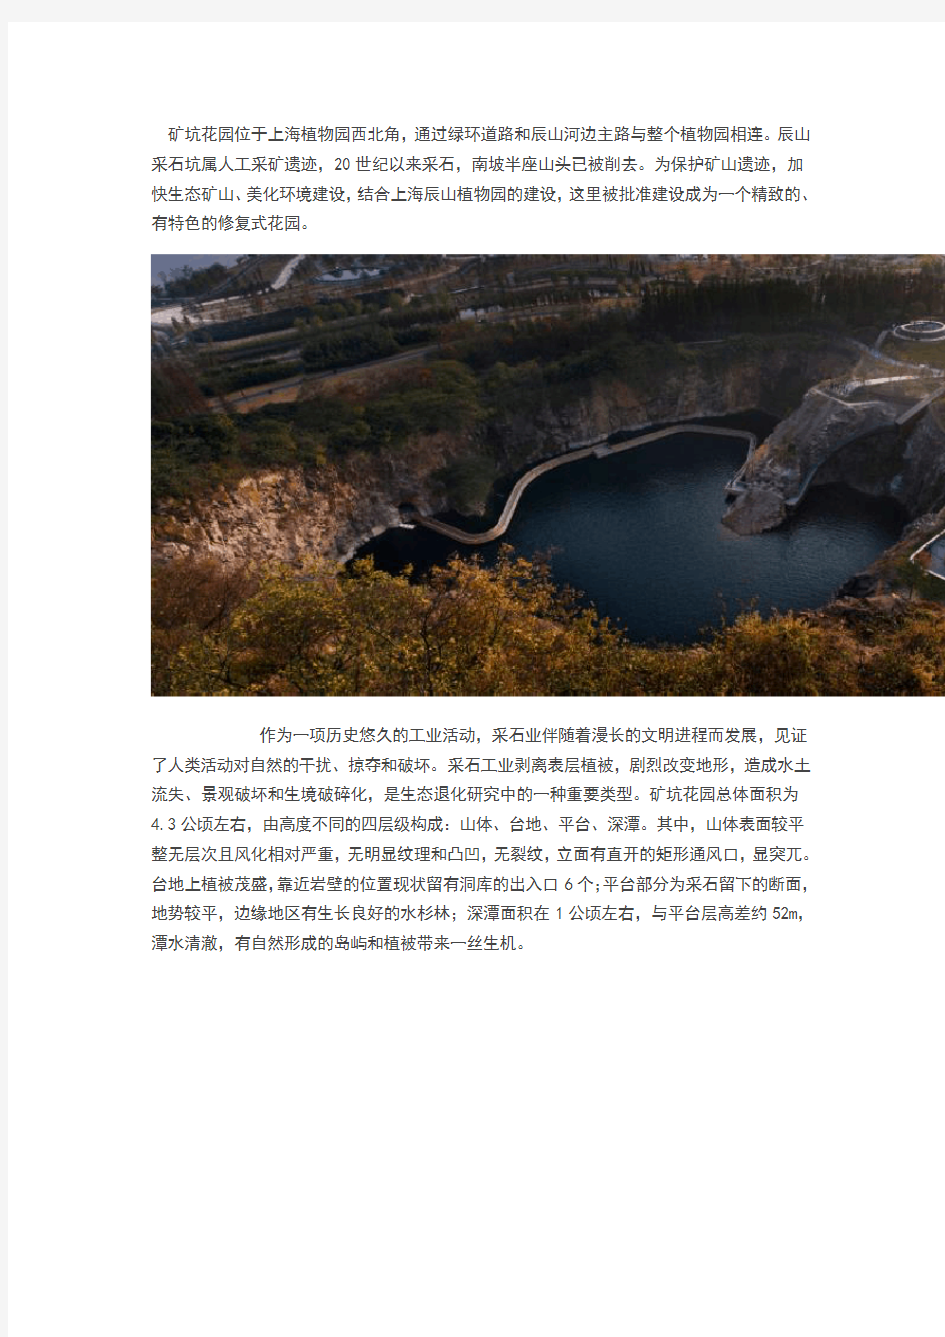 上海辰山植物园的矿坑花园(经典的生态修复案例)